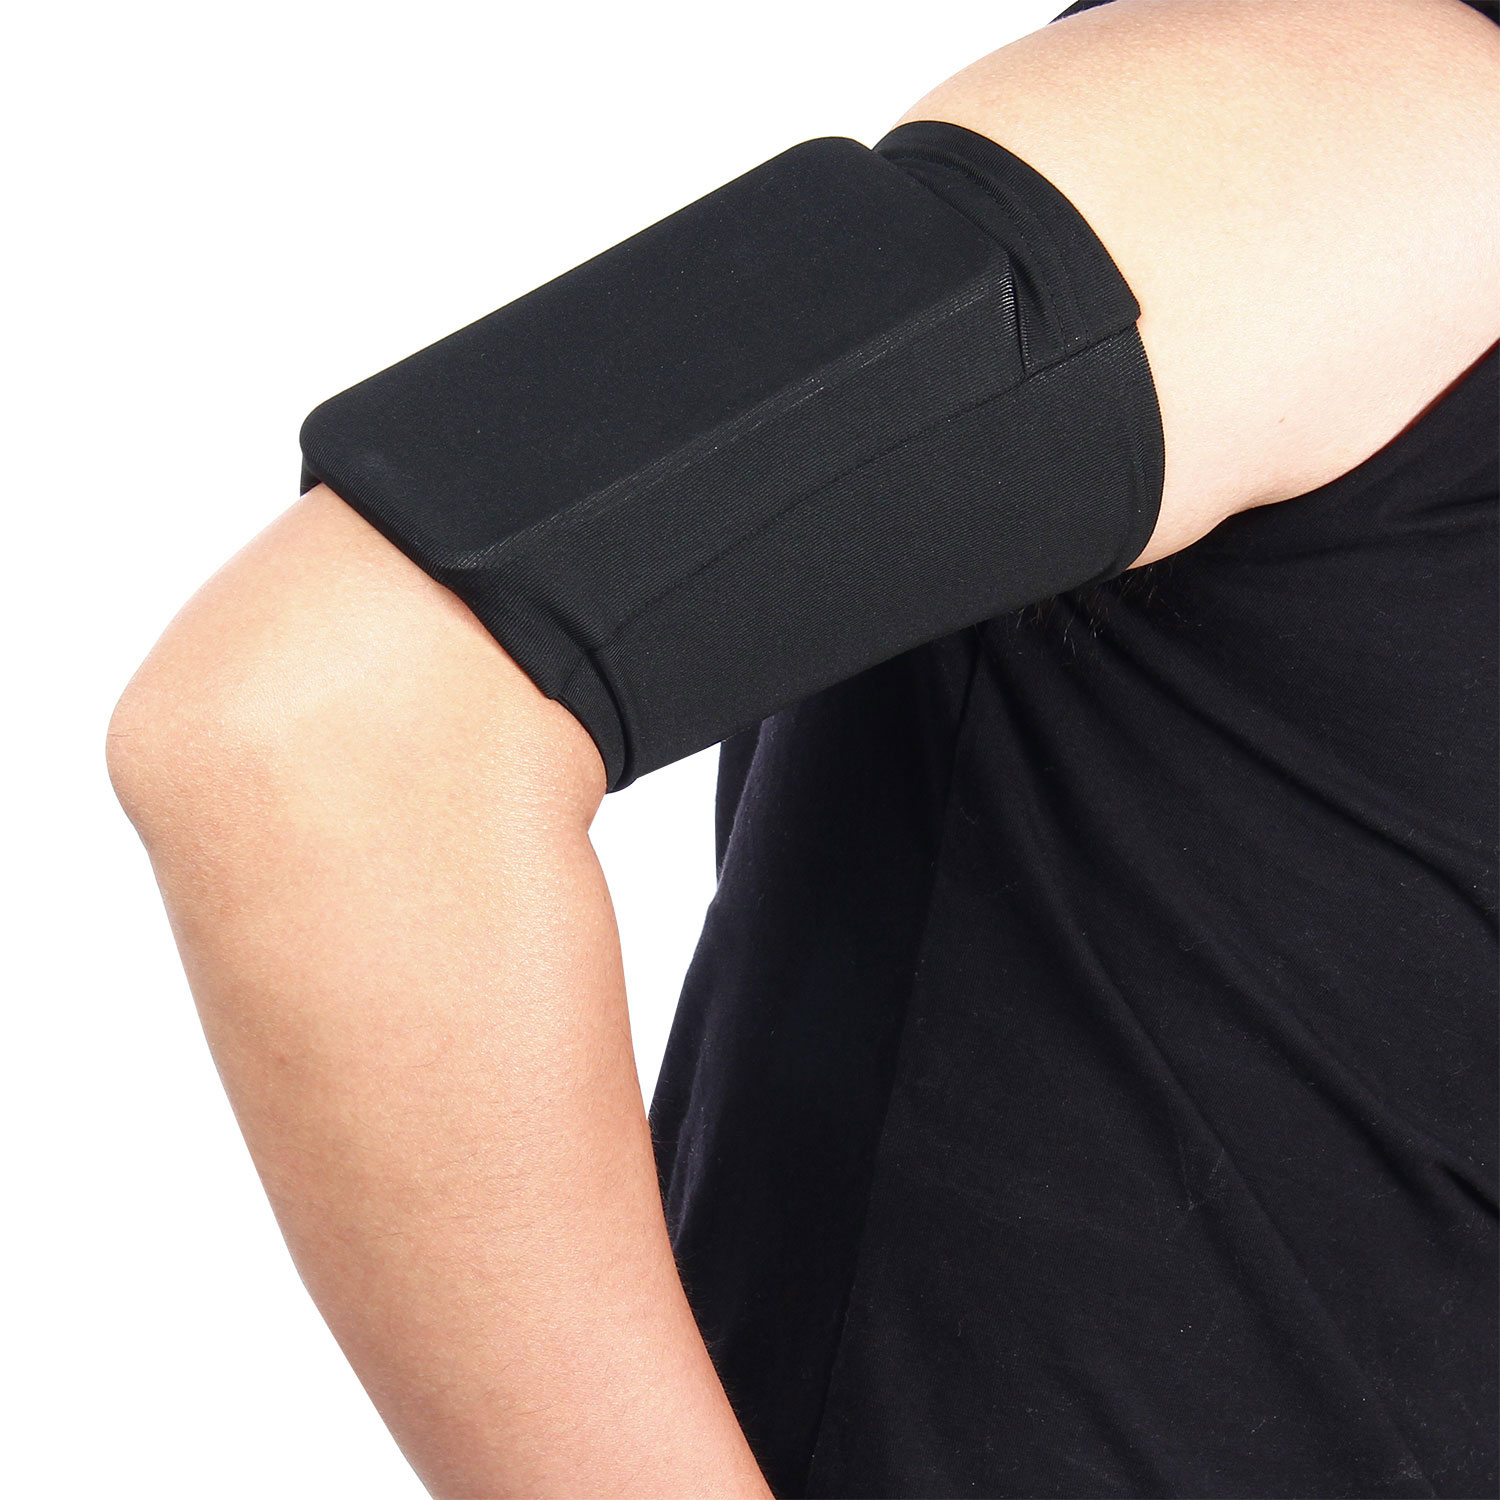 UMIONสายรัดแขนออกกำลังกายยืดได้สำหรับโทรศัพท์4-5.5นิ้ว,ที่วางแขนสำหรับวิ่งฟิตเนสและออกกำลังกายในยิมสีดำ